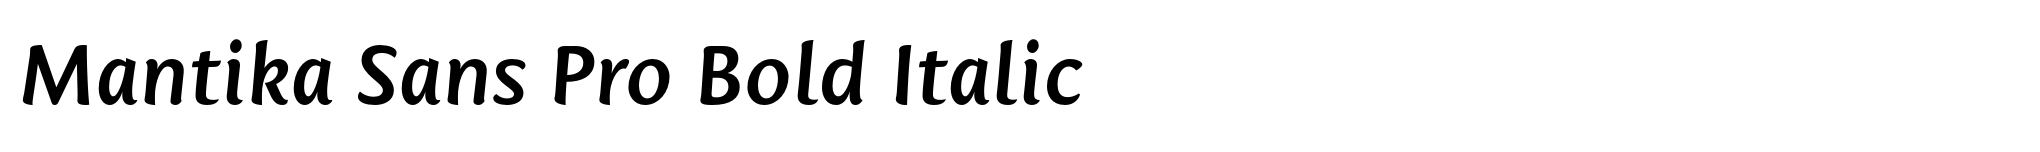 Mantika Sans Pro Bold Italic image